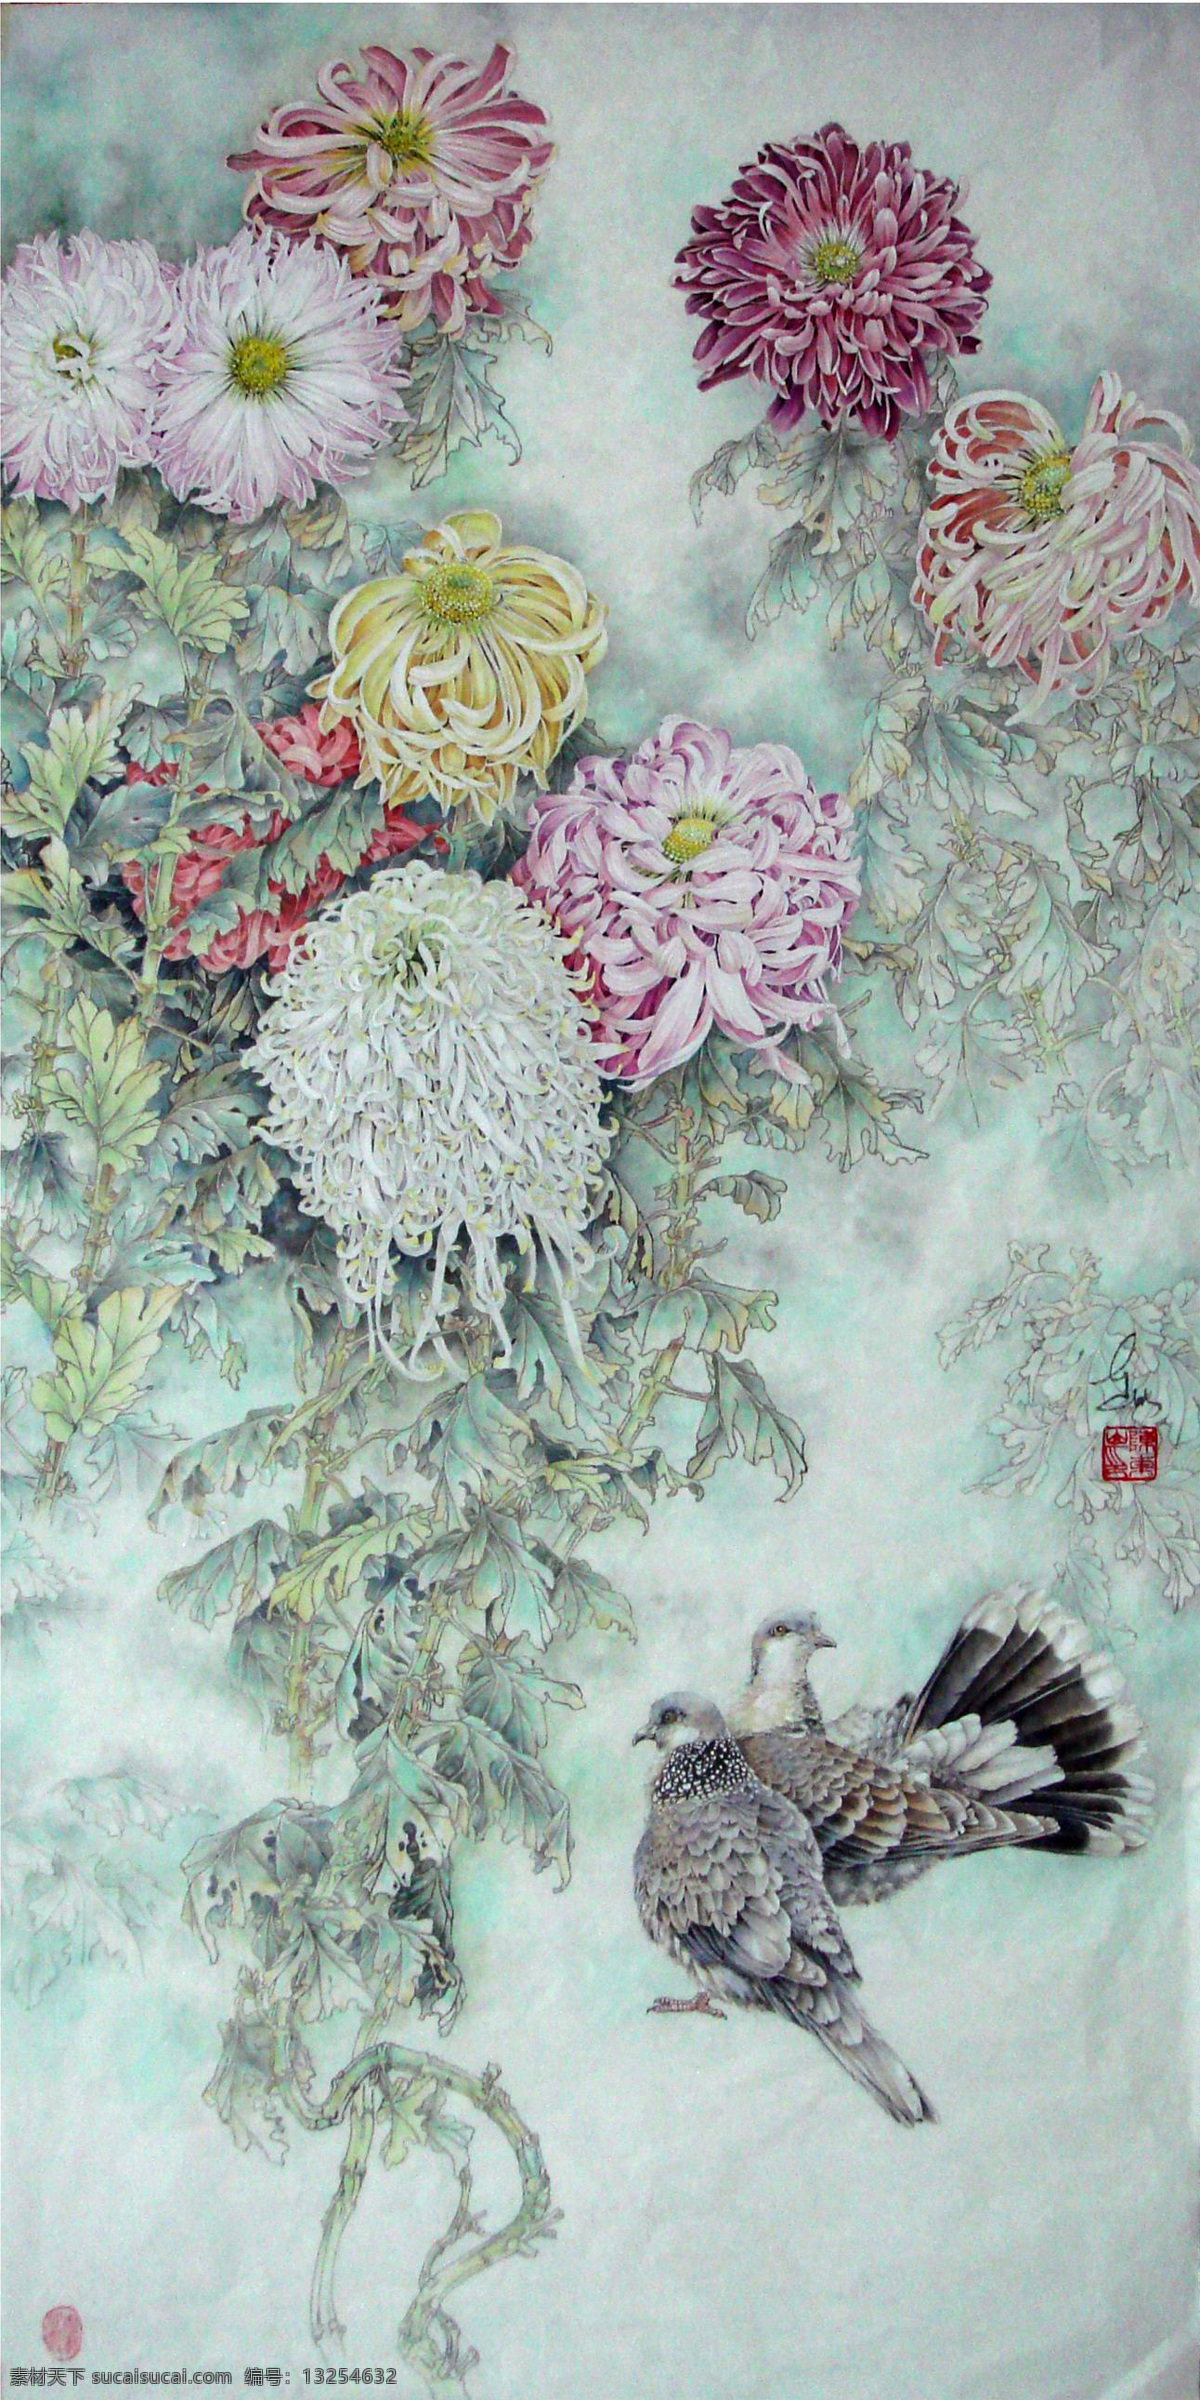 秋意盎然 国画 工笔 手绘 写实 动物 花卉 菊花 高清 国画艺术 绘画书法 文化艺术